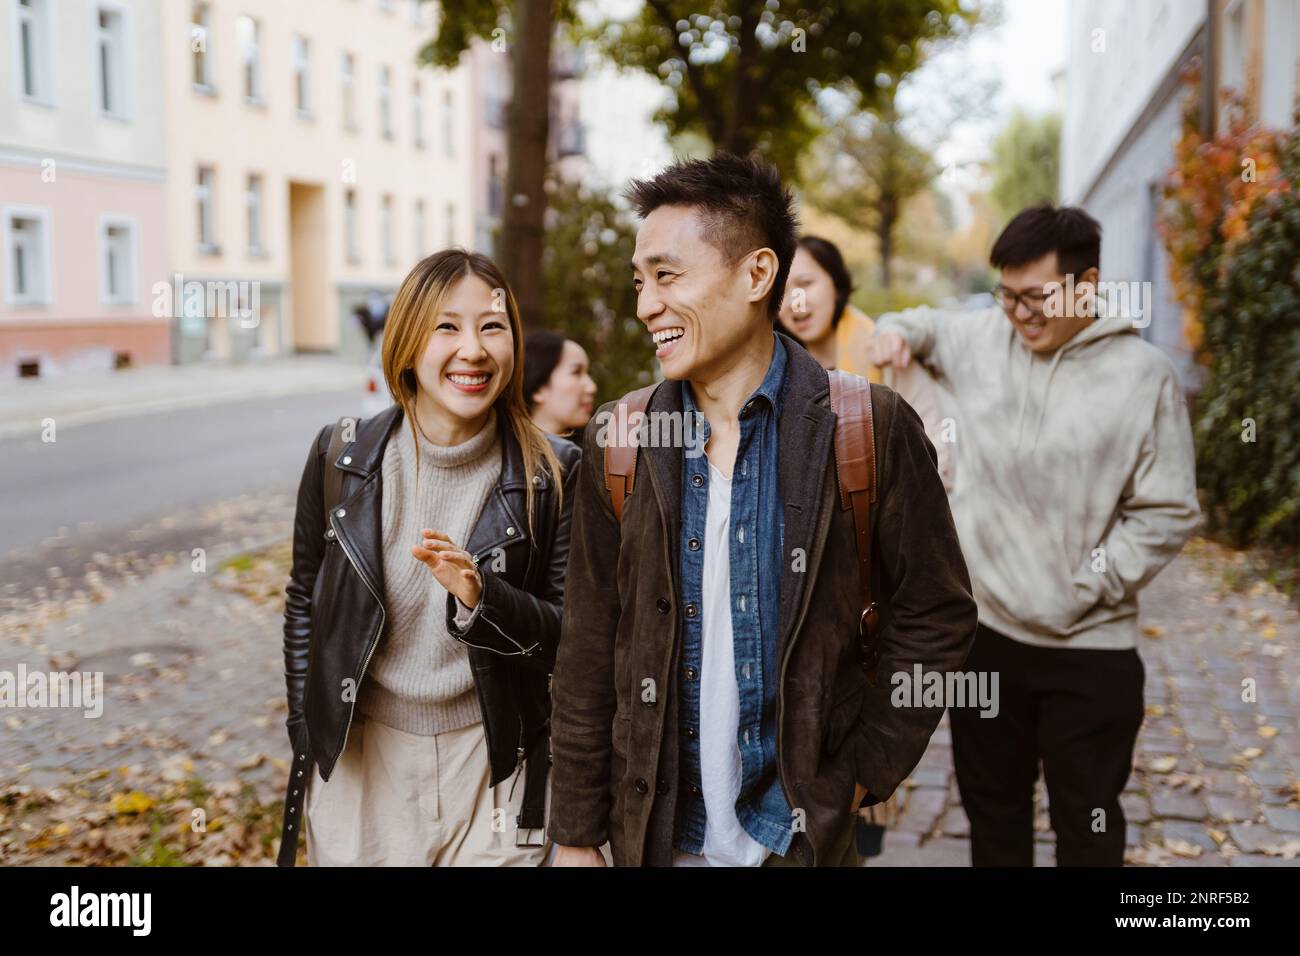 Männliche und weibliche Freunde lachen, während sie auf dem Bürgersteig gehen Stockfoto